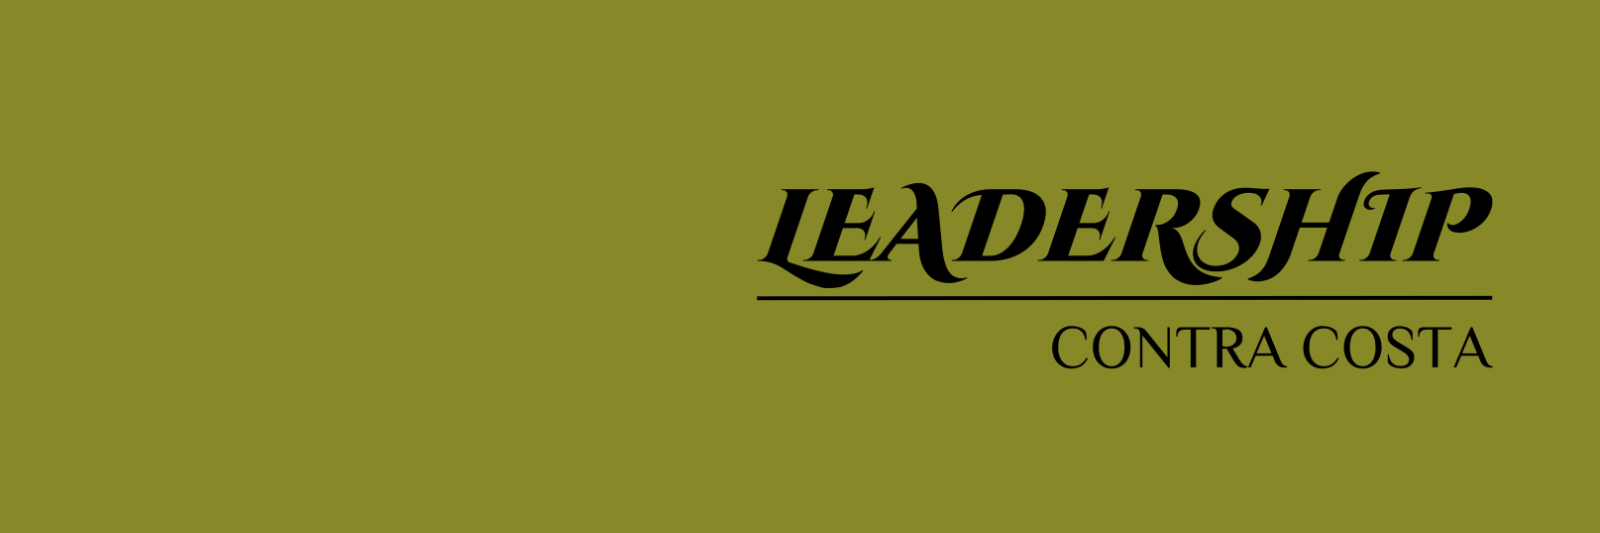 Leadership Contra Costa logo